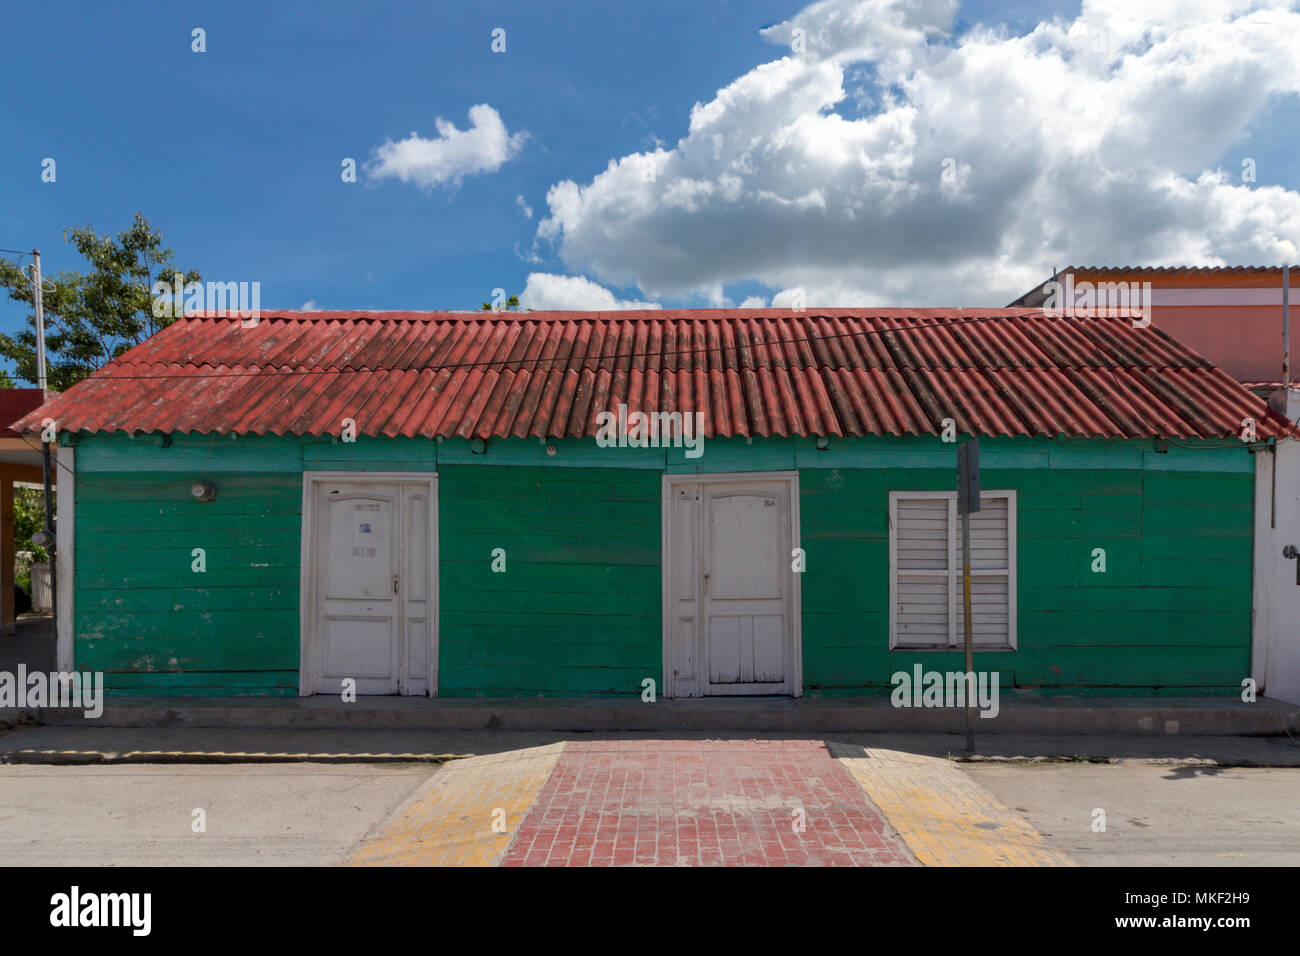 Strade vuote, la gente rimane a casa. Casa colorata in legno in Messico. Il tempo di Siesta è un must, soprattutto durante i pomeriggi estivi. Foto Stock